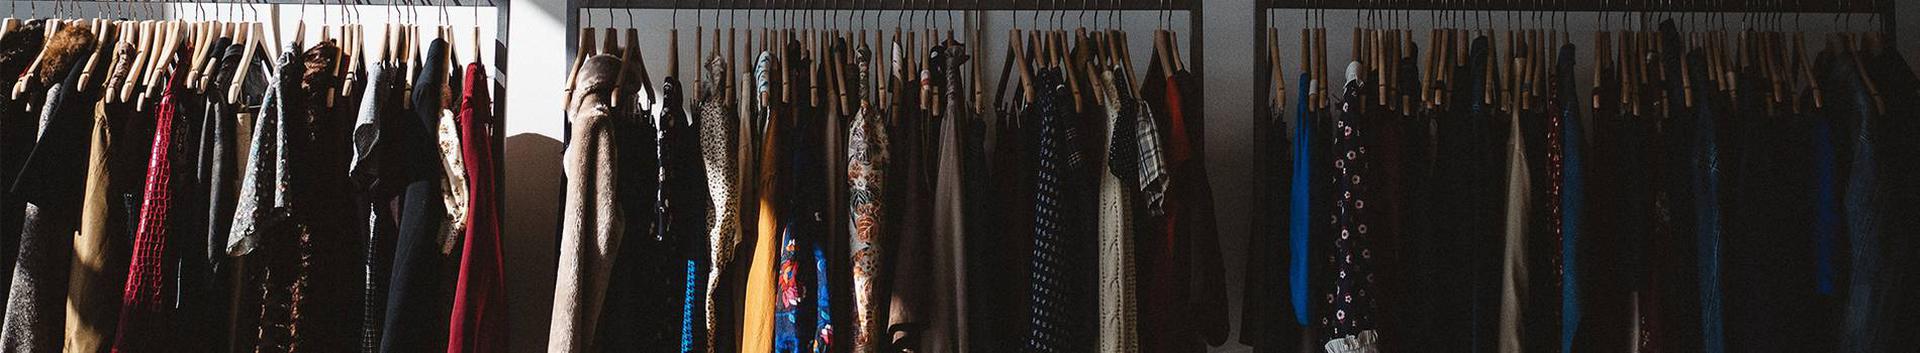 Suurim mainega ettevõte AAVI LENSMENT FIE, maineskoor 180, aktiivseid äriseoseid 1. Tegutseb peamiselt valdkonnas: Tekstiili, rõivaste jaemüük.